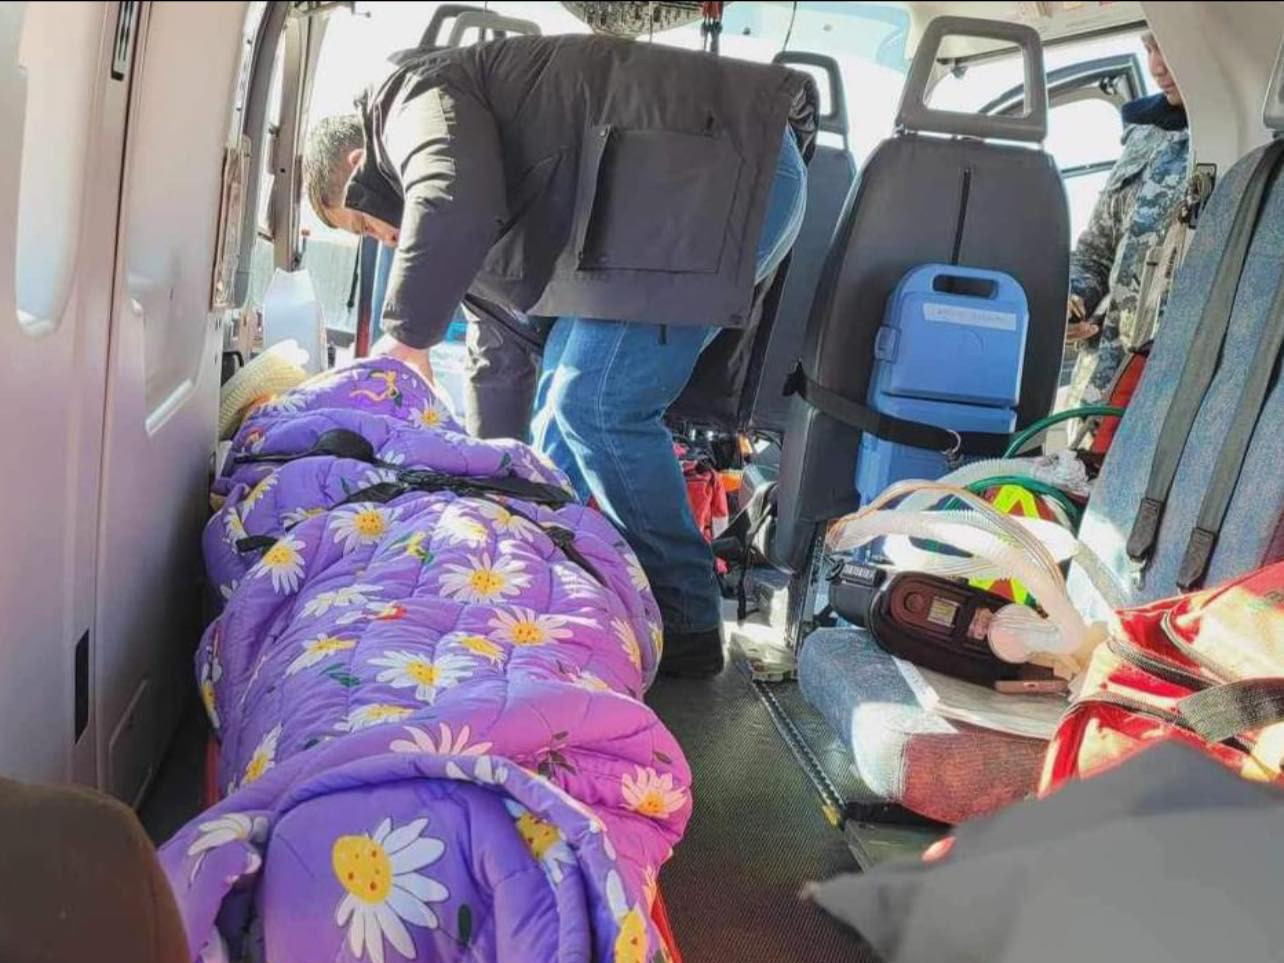 Ханбогд суманд осолд орсон жолоочийг тээвэрлэсэн нисдэг тэрэг Улаанбаатарт газардах гэж байна